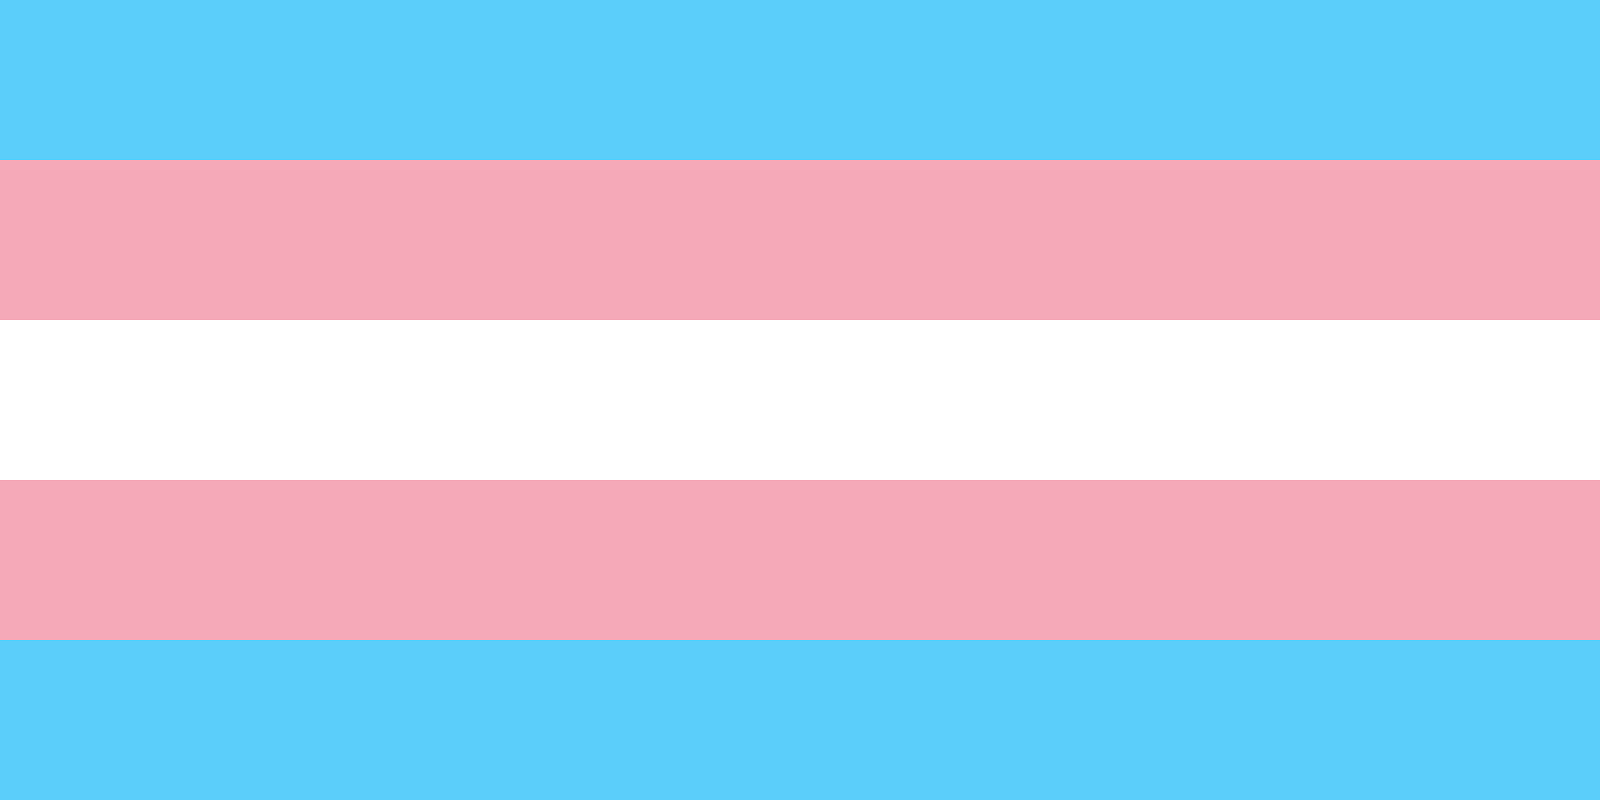 Supreme Court On Transgender Munity National Legal